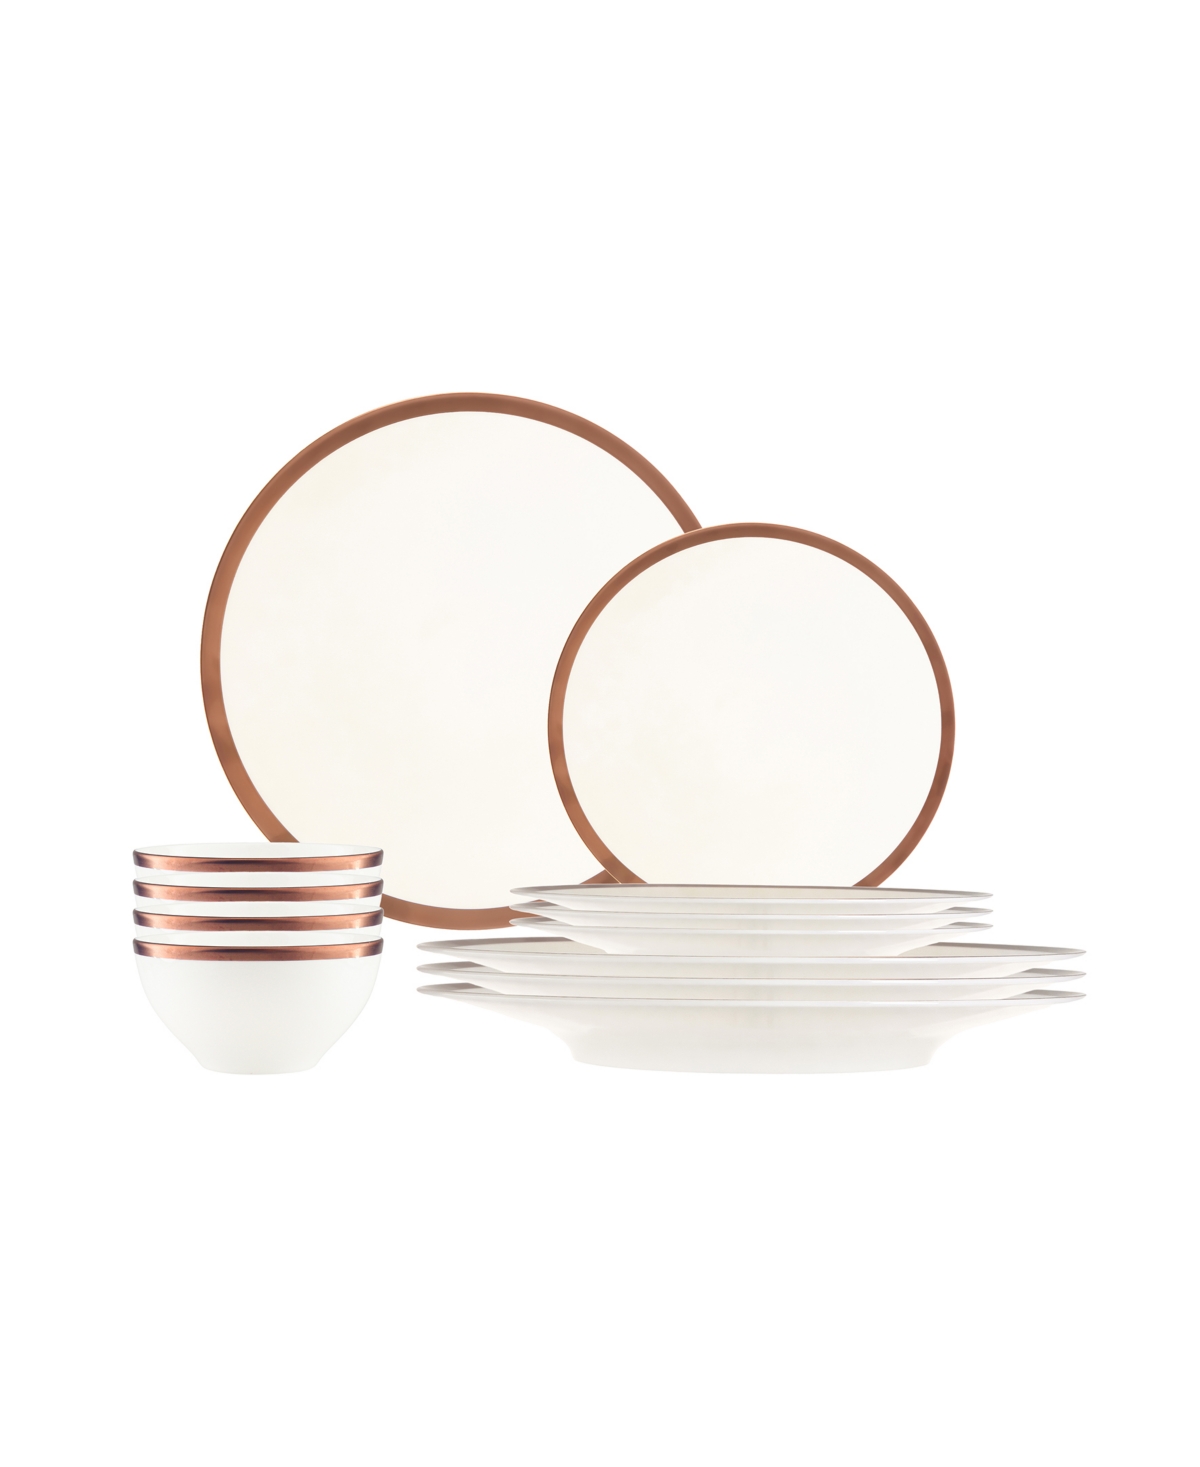 Copper Line 12 Piece Dinnerware Set, Service for 4 - White, Copper